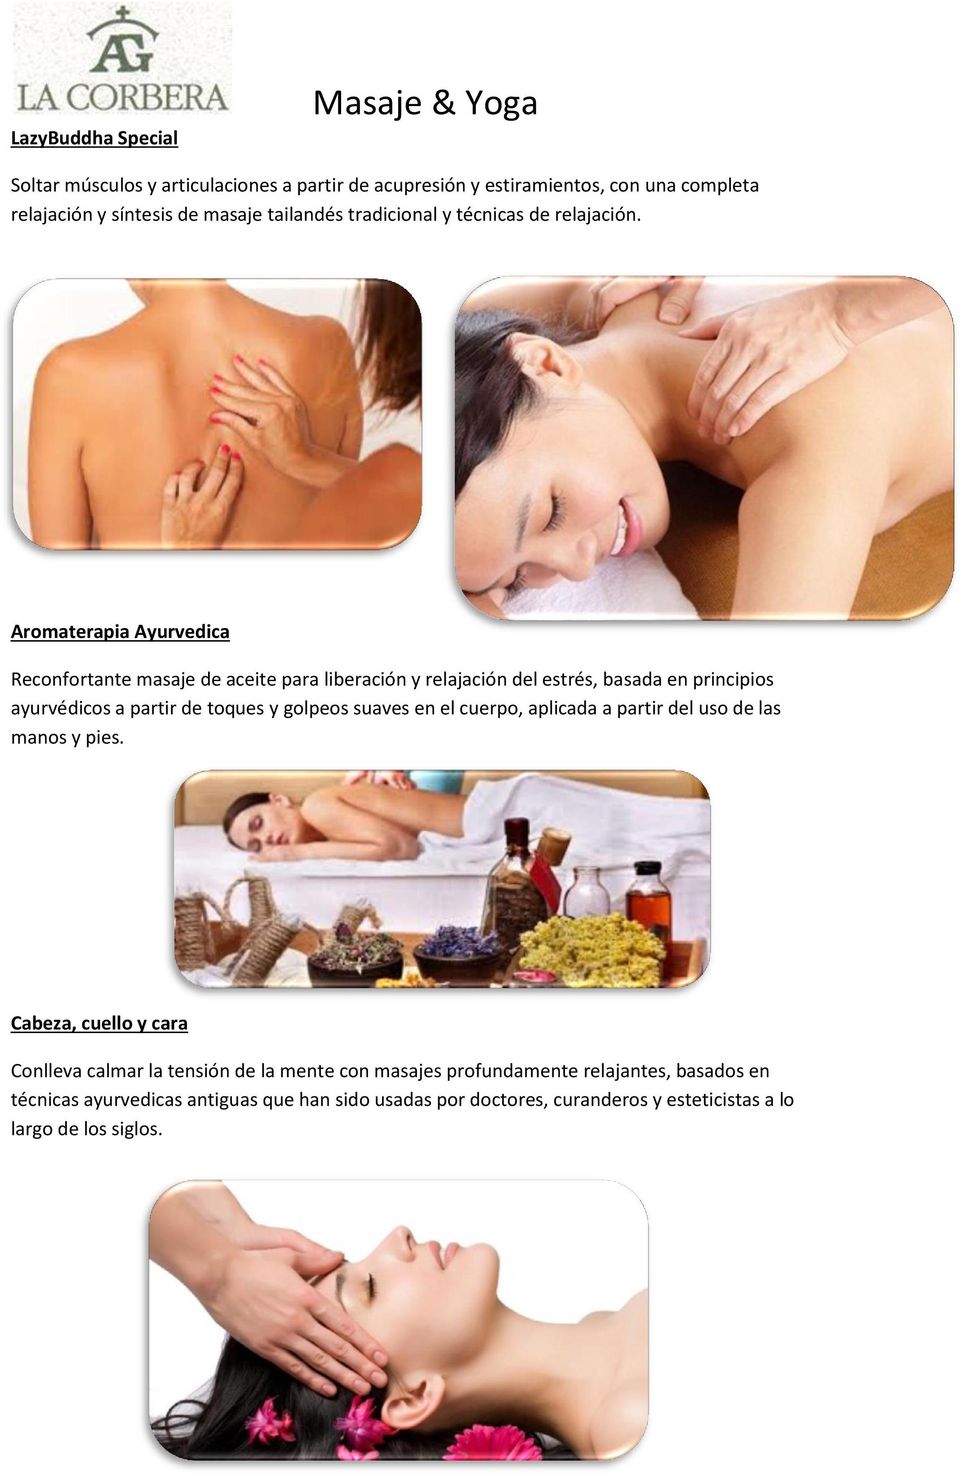 Aromaterapia Ayurvedica Reconfortante masaje de aceite para liberación y relajación del estrés, basada en principios ayurvédicos a partir de toques y golpeos